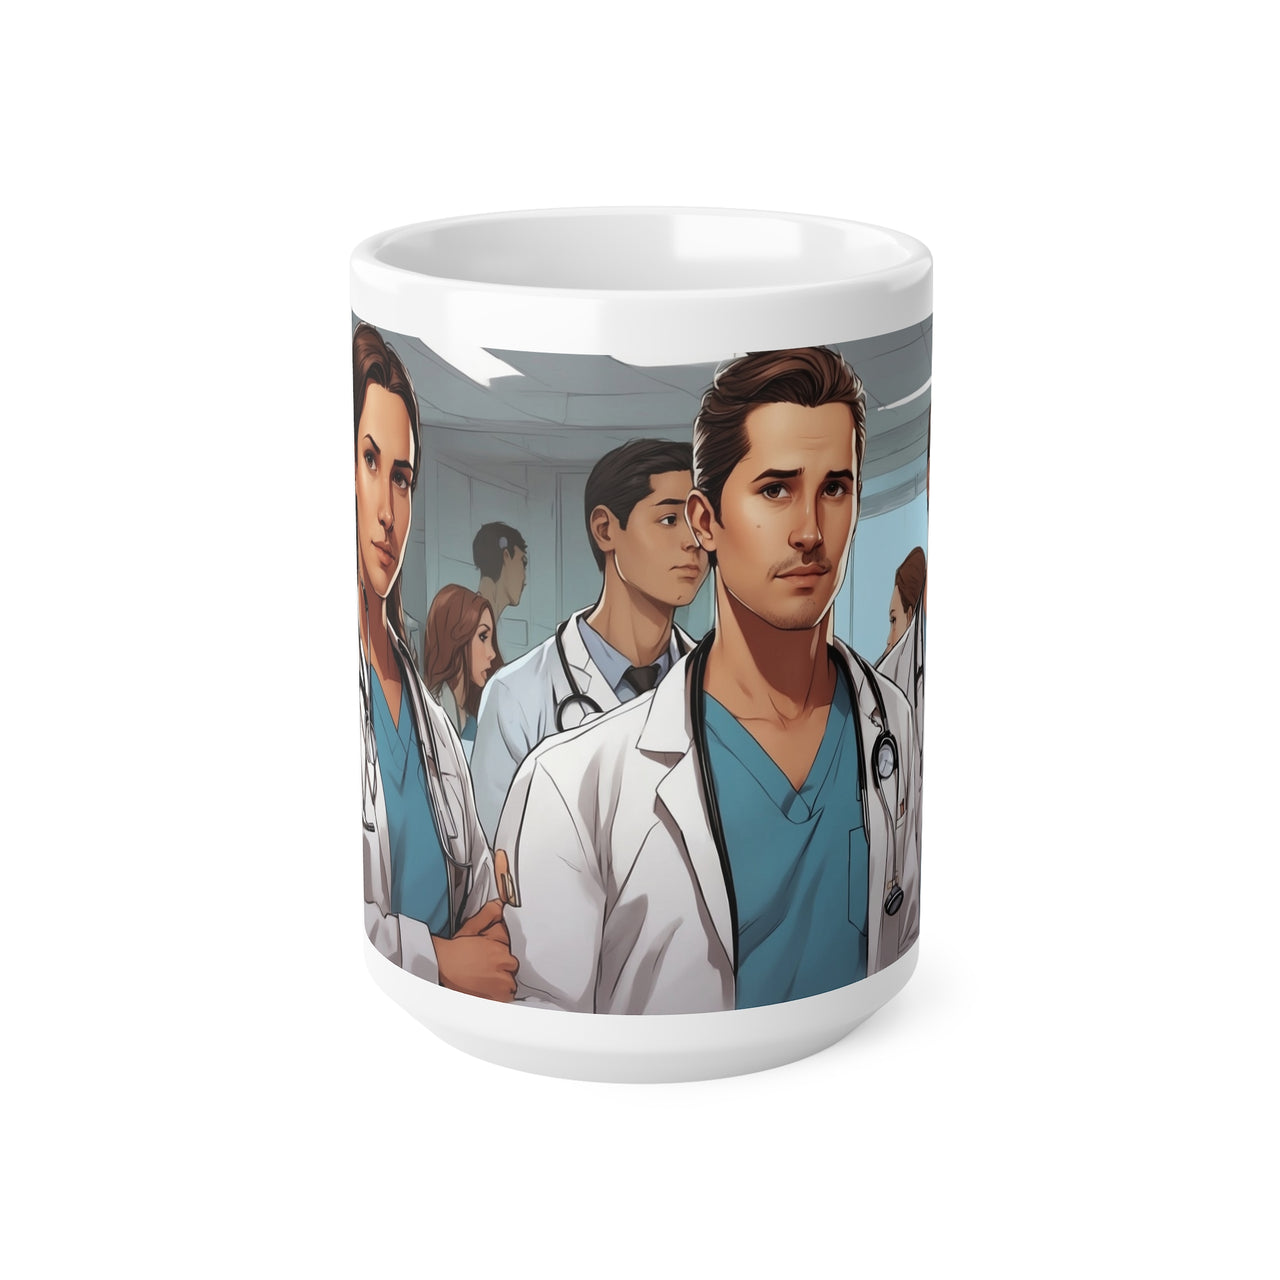 Taza "Somos médicos" , Taza para médicos y médicas, taza de café, 0.33 l, 0.44 l